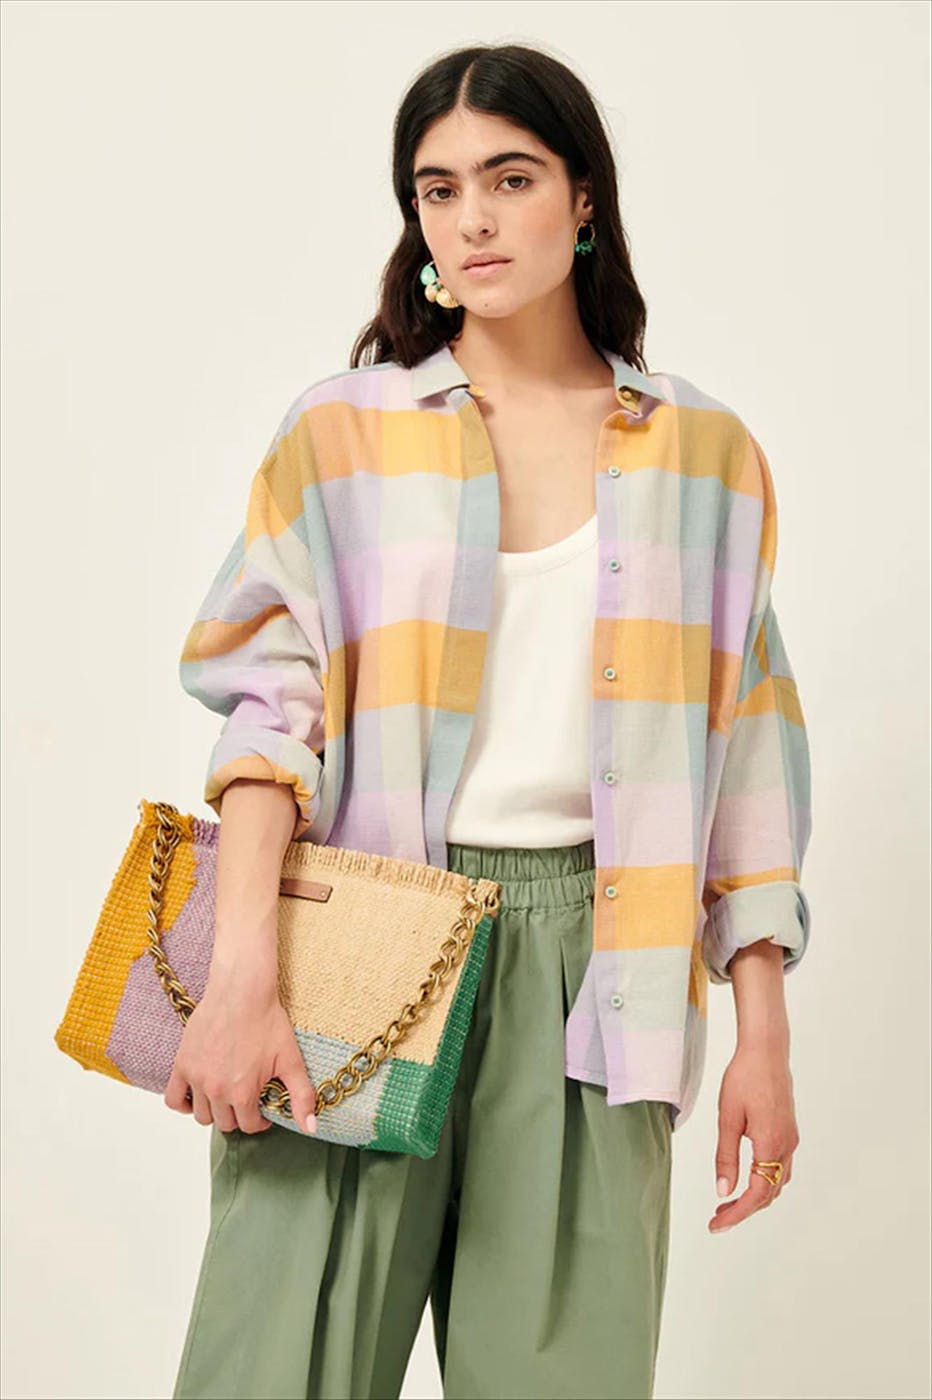 Sessùn - Multicolor Delima blouse